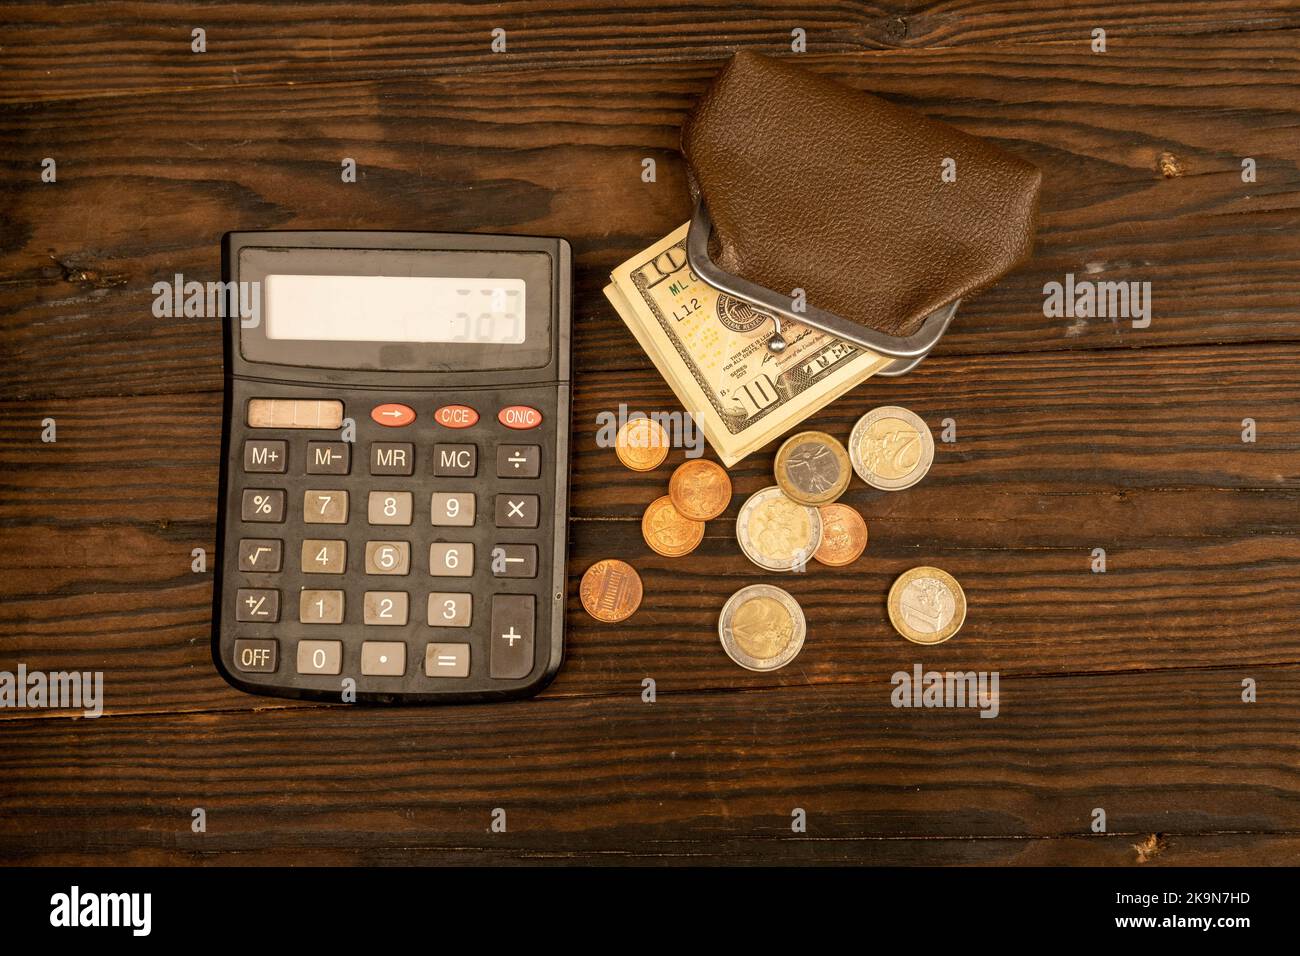 Billets en dollars, pièces en euros, portefeuille en cuir brun vintage et calculatrice sur une surface en bois. Gros plan, mise au point sélective. Banque D'Images